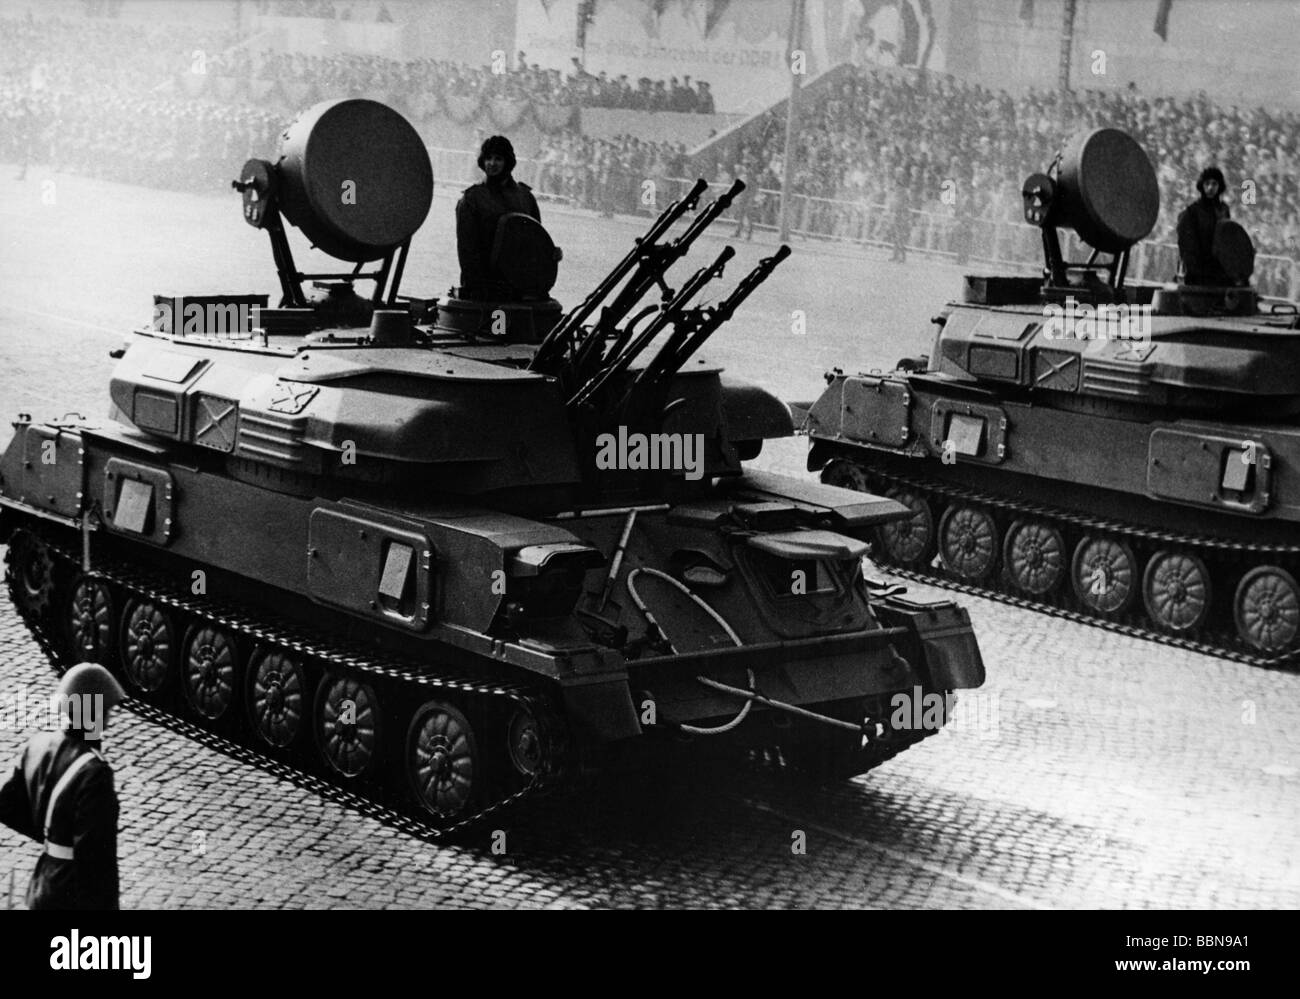 Militar, Alemania Oriental, Ejército Popular Nacional, Fuerzas terrestres, tanque antiaicraft ZSU-23-4 'hilka', desfile, día de la República, Plaza Marx Engels, Berlín Oriental, 7.10.1969, , Foto de stock